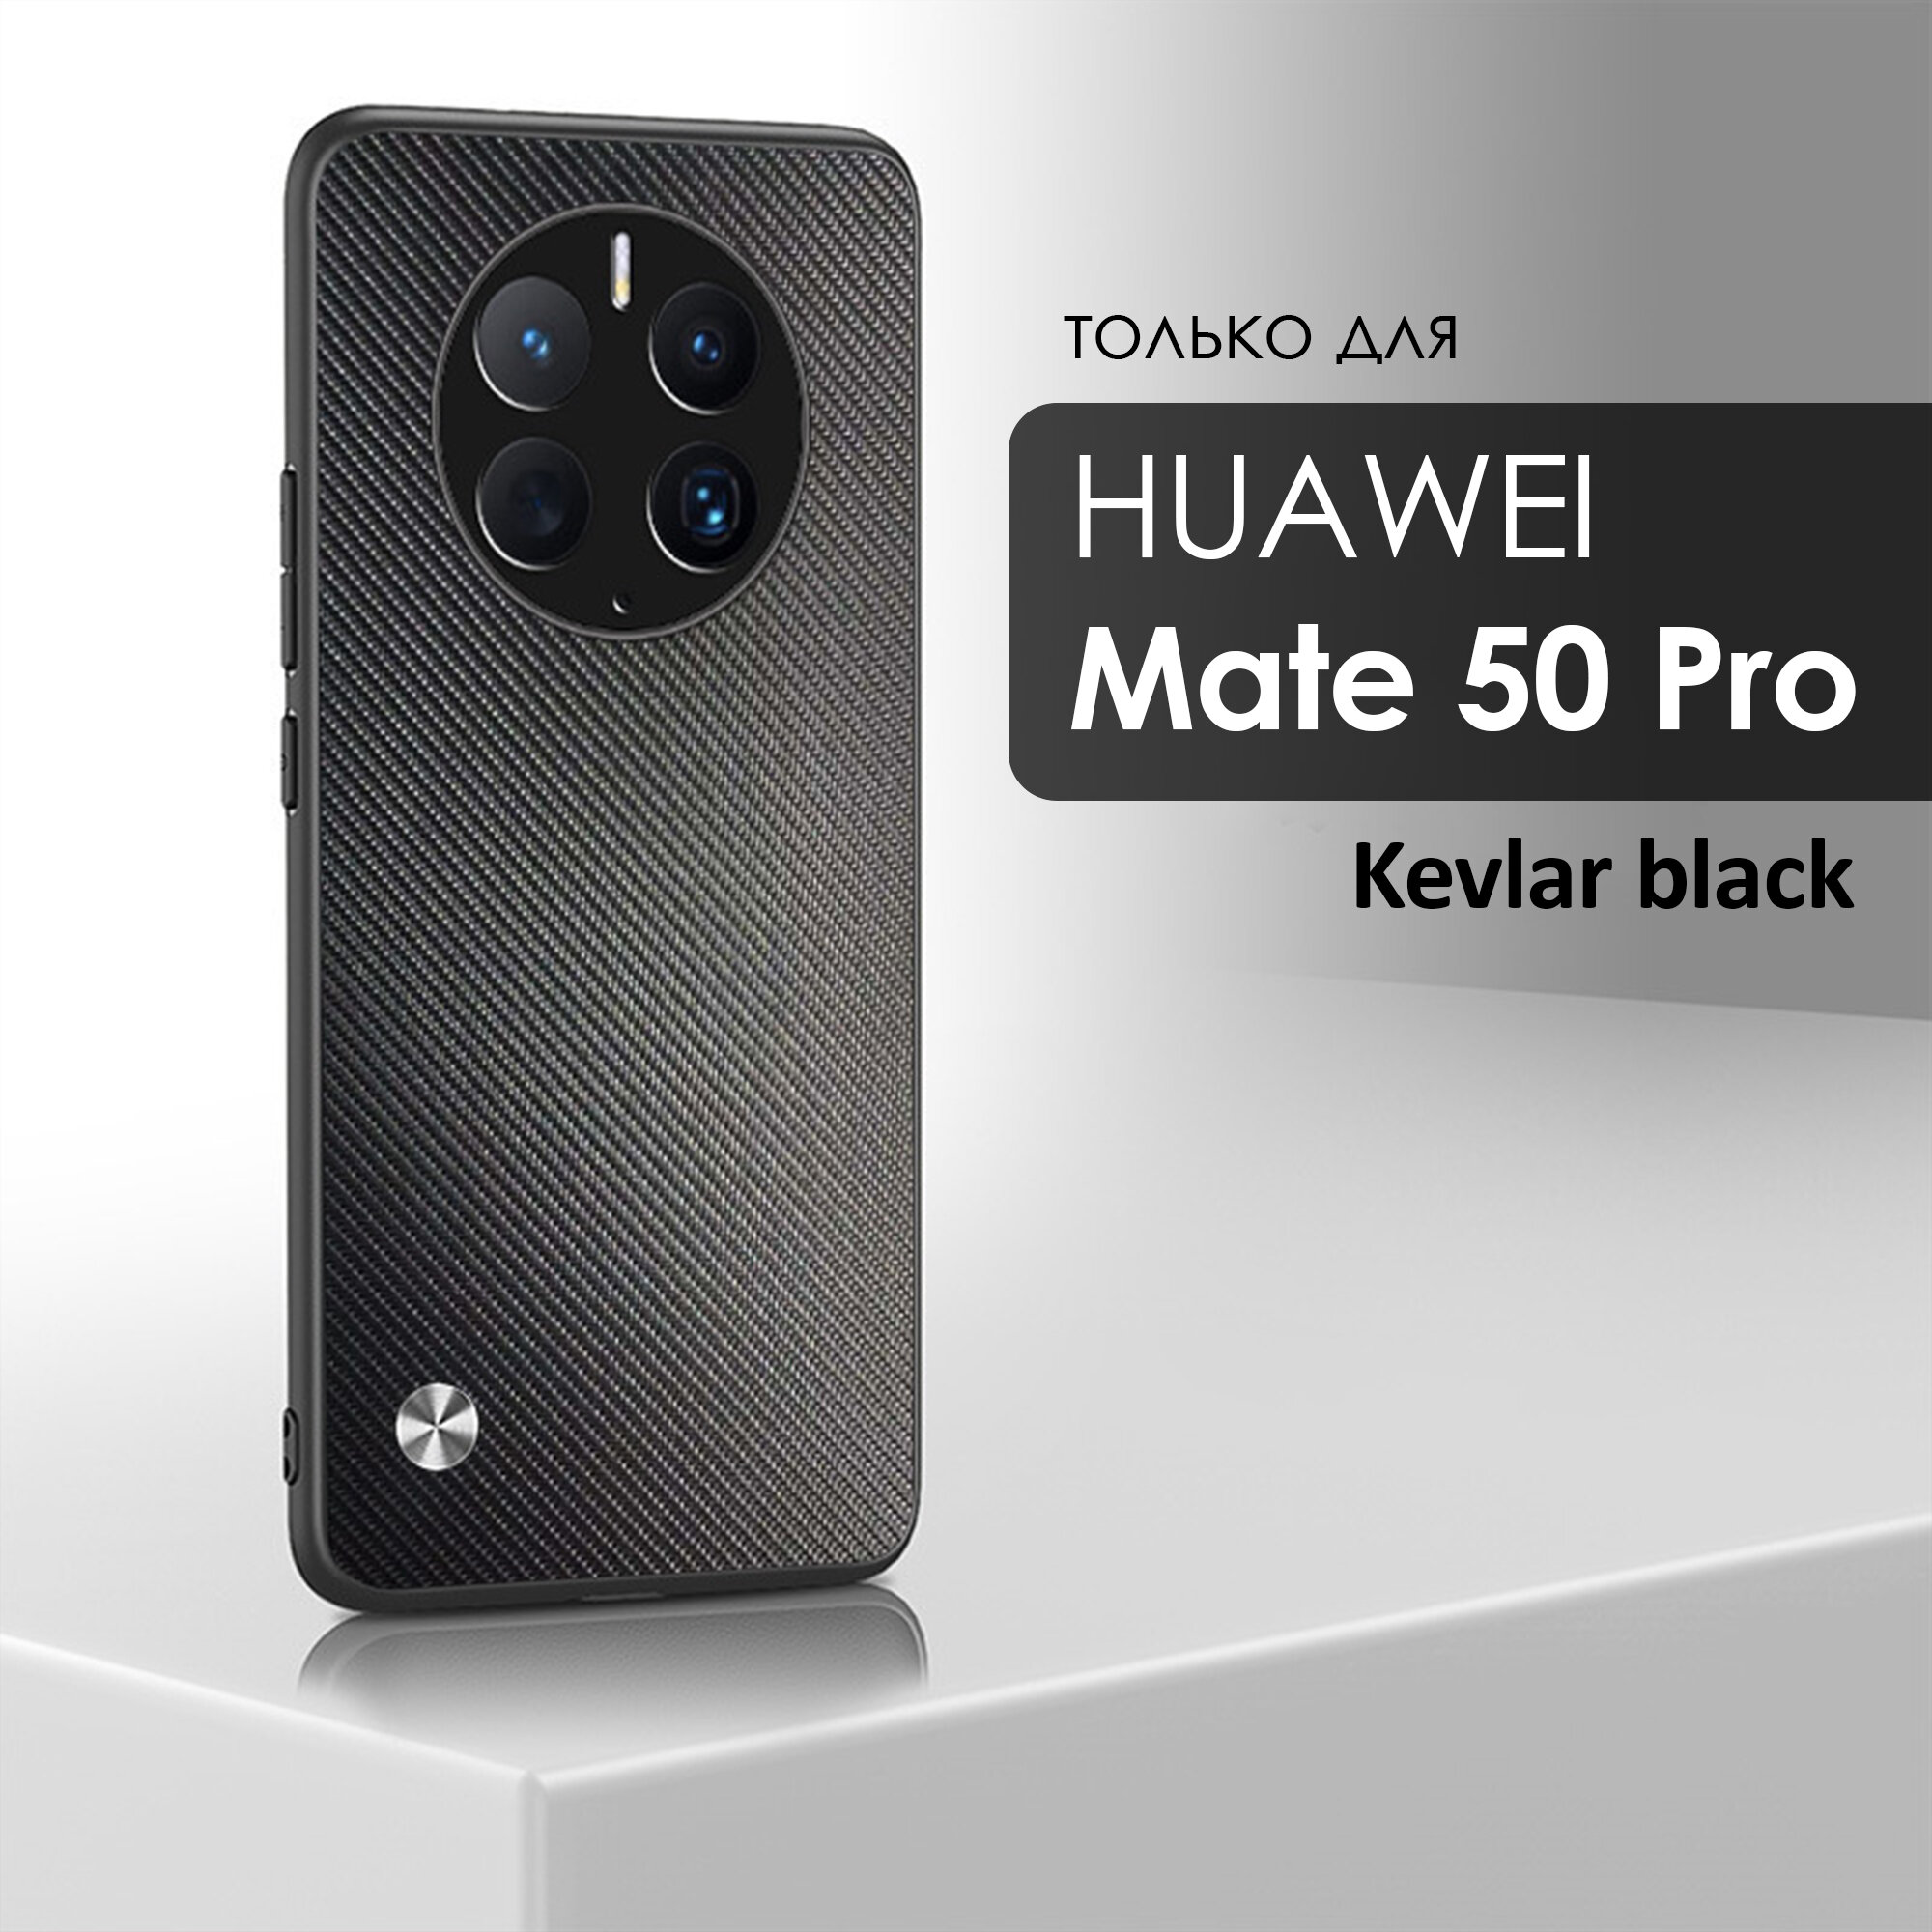 Чехол кожаный на Huawei Mate 50 Pro (Хуавей Мэйт 50 Про) премиум, цвет кевлар черный